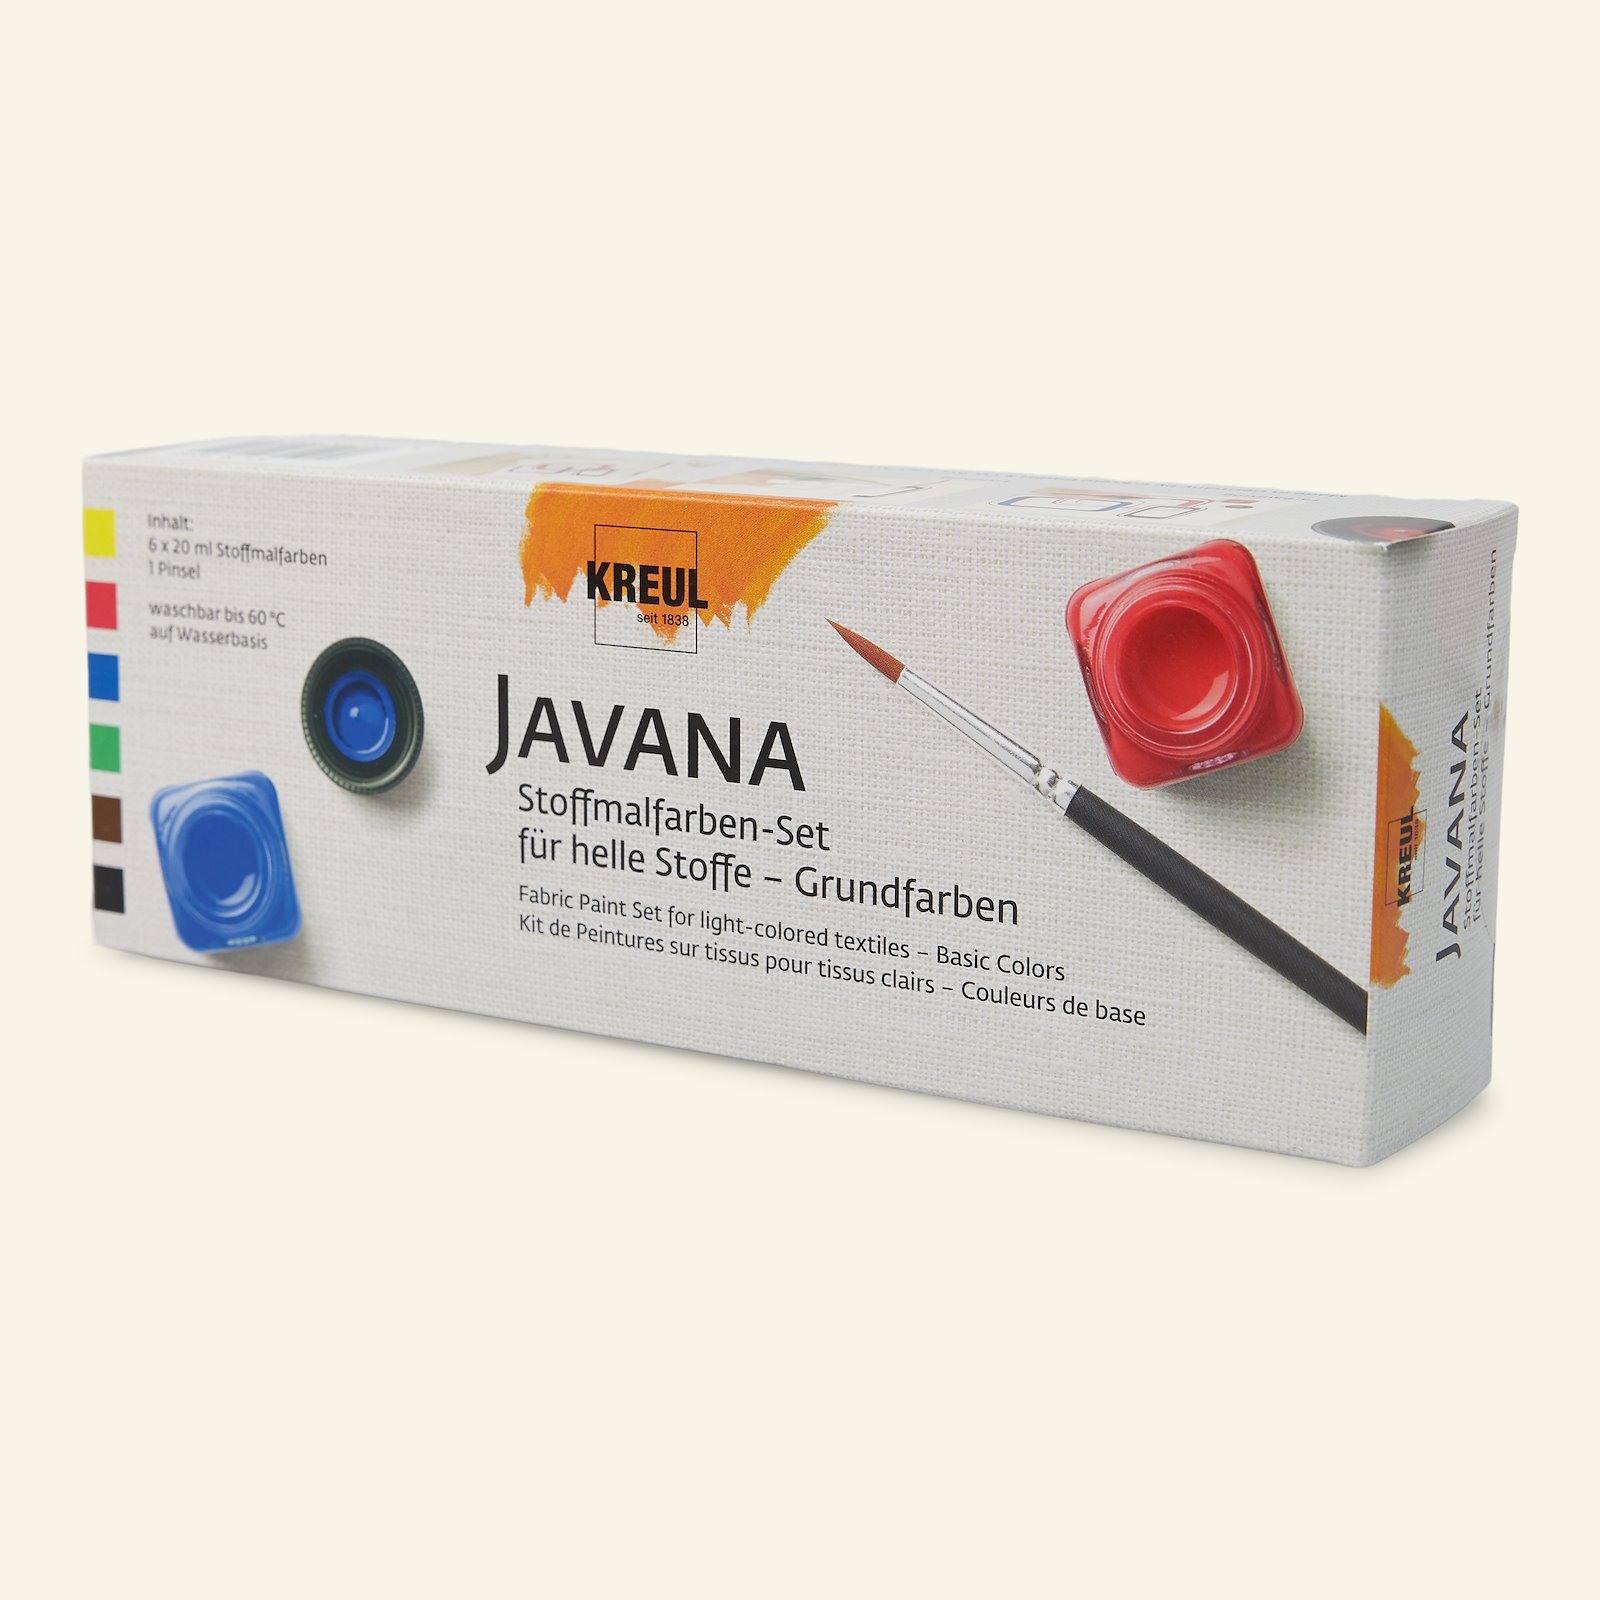 Javana tekstilfarge, grunnfarger, 6x20ml 29551_pack_c